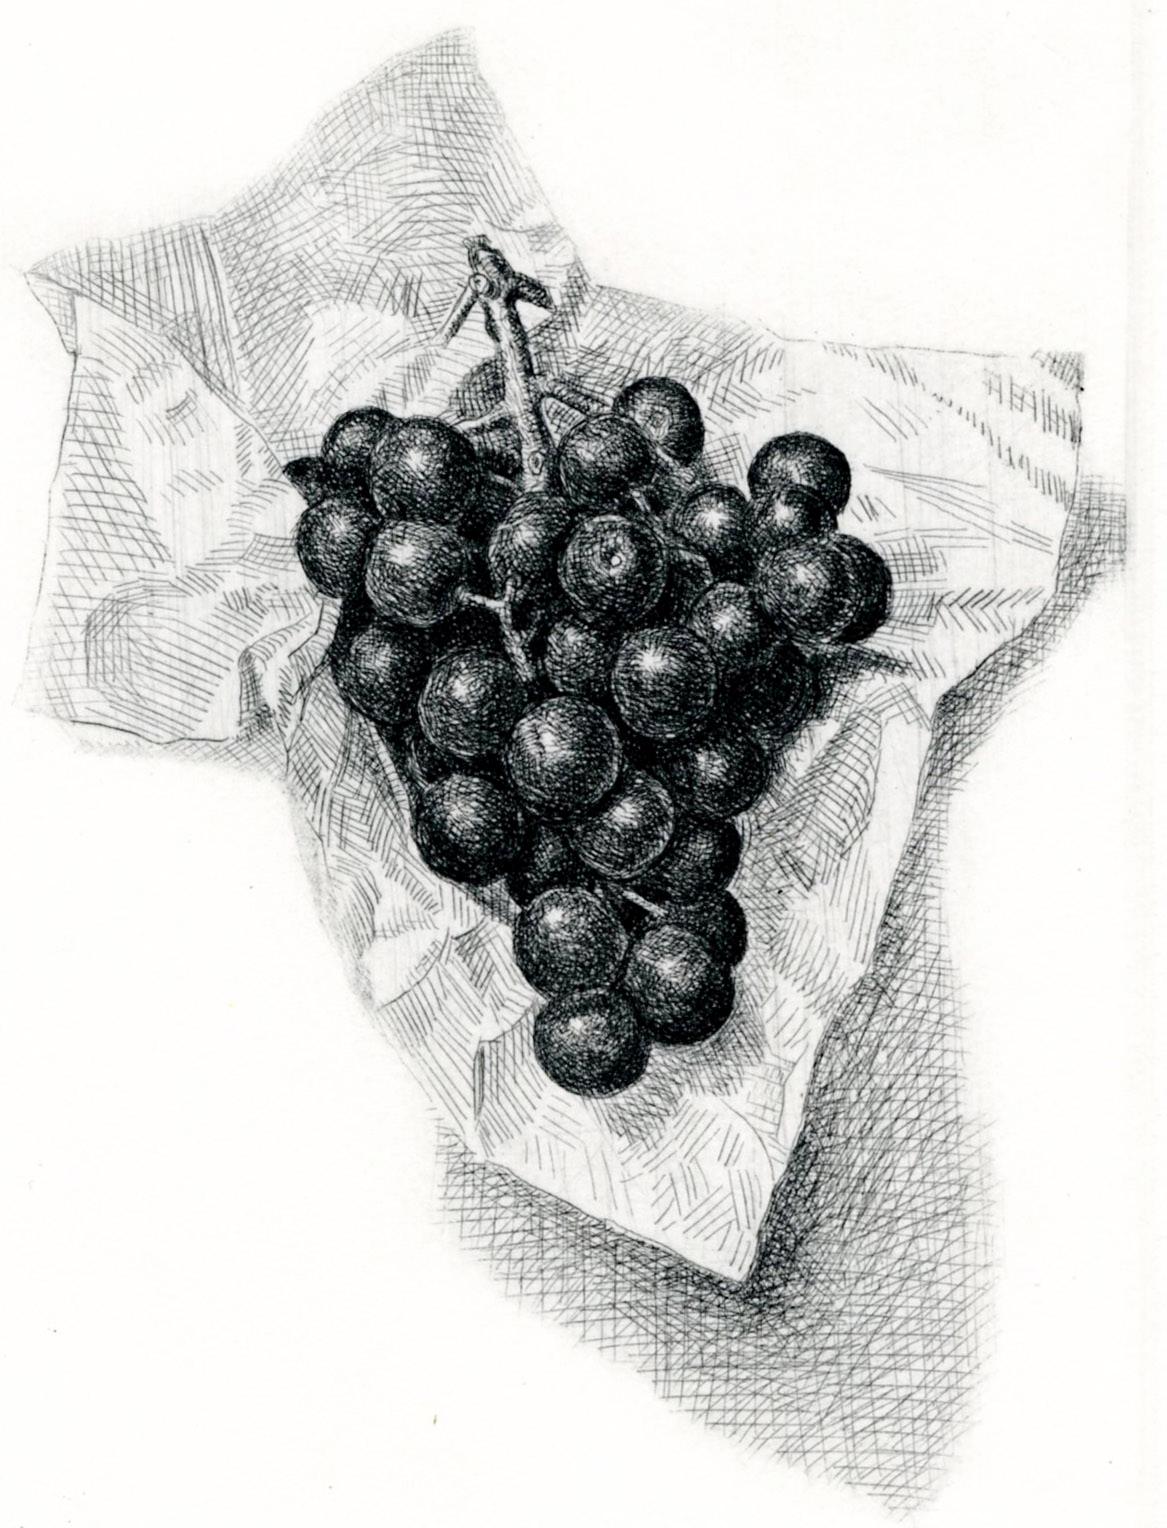 Grappe de raisins dans une serviette pliée - Réalisme américain Print par Stone Roberts